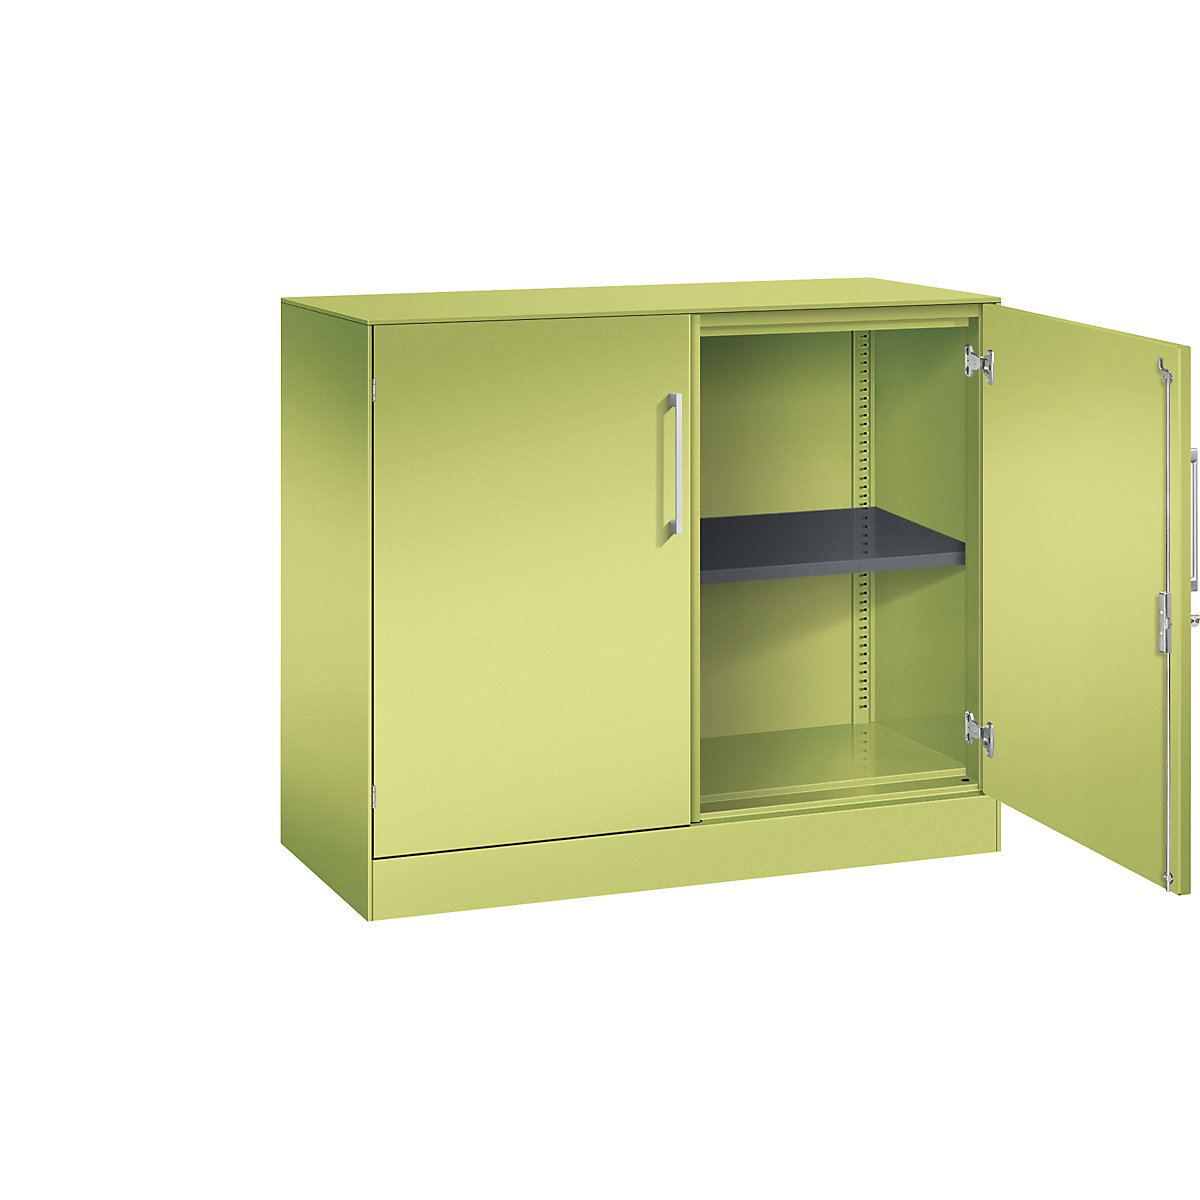 C+P – Skříň s otočnými dveřmi ASISTO, výška 897 mm, šířka 1000 mm, 1 police, viridianová zelená/viridianová zelená